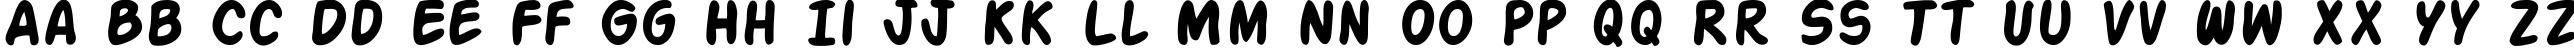 Пример написания английского алфавита шрифтом Action Man Bold